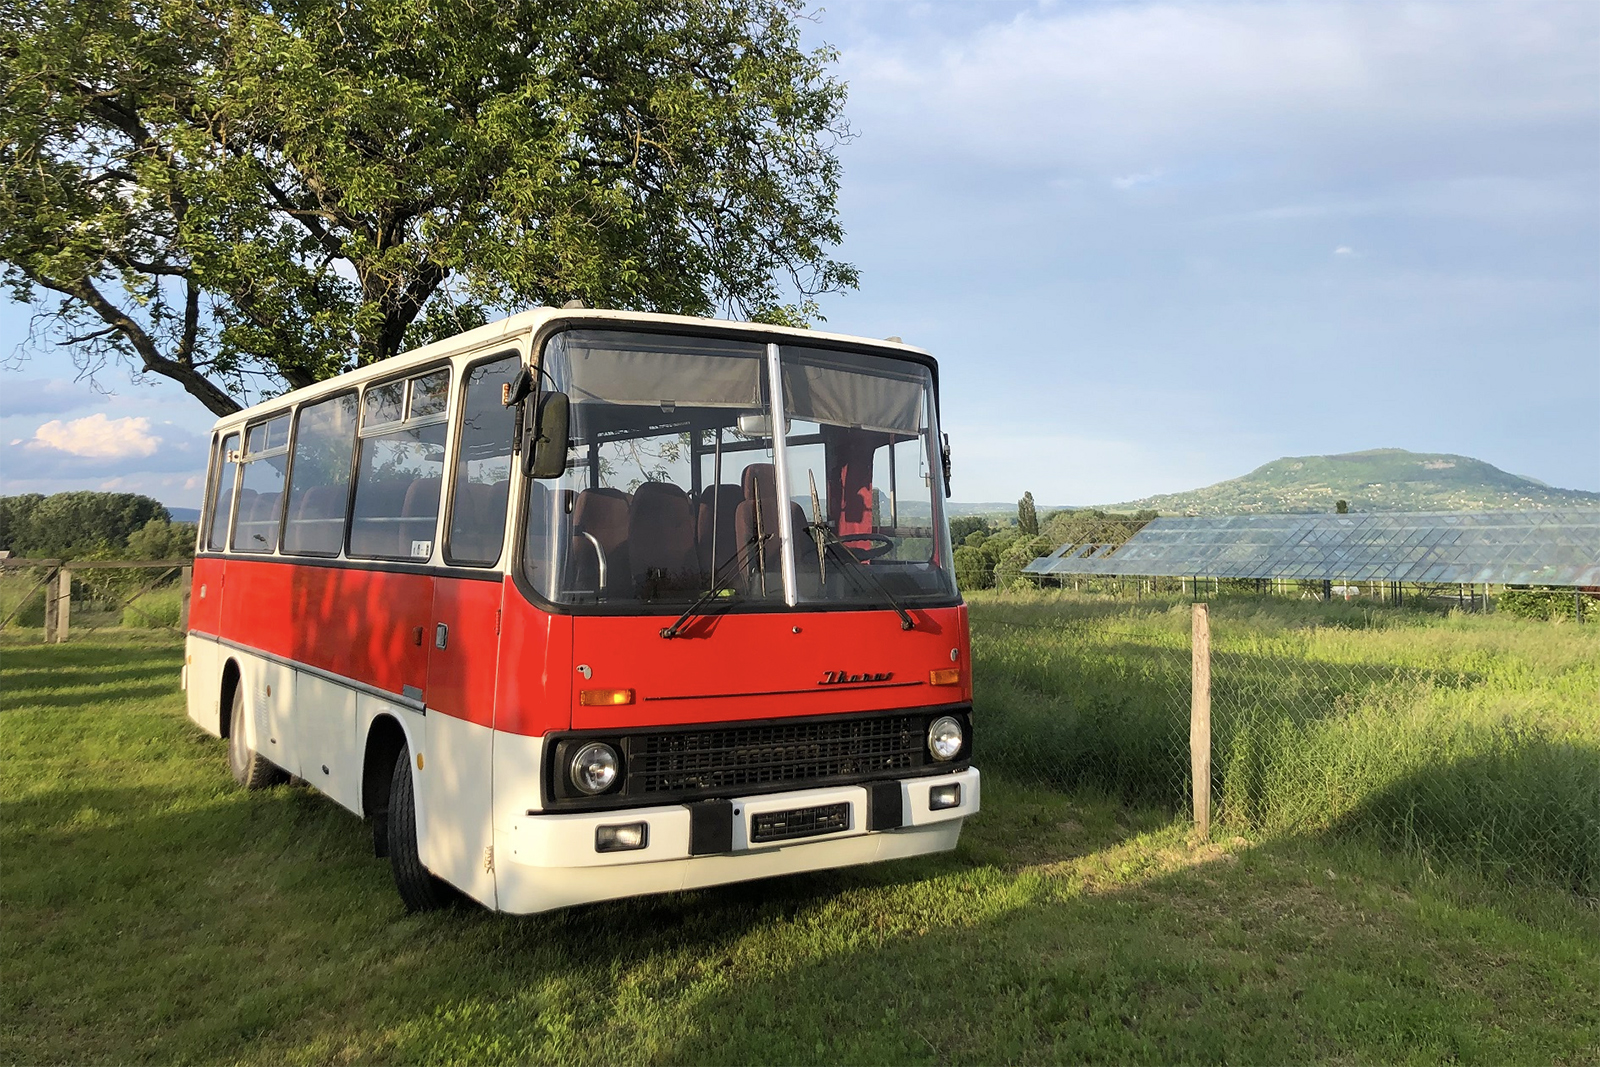 Laprugós kedvencek - Ikarus 211-es midibuszok hazai magángyűjtőknél